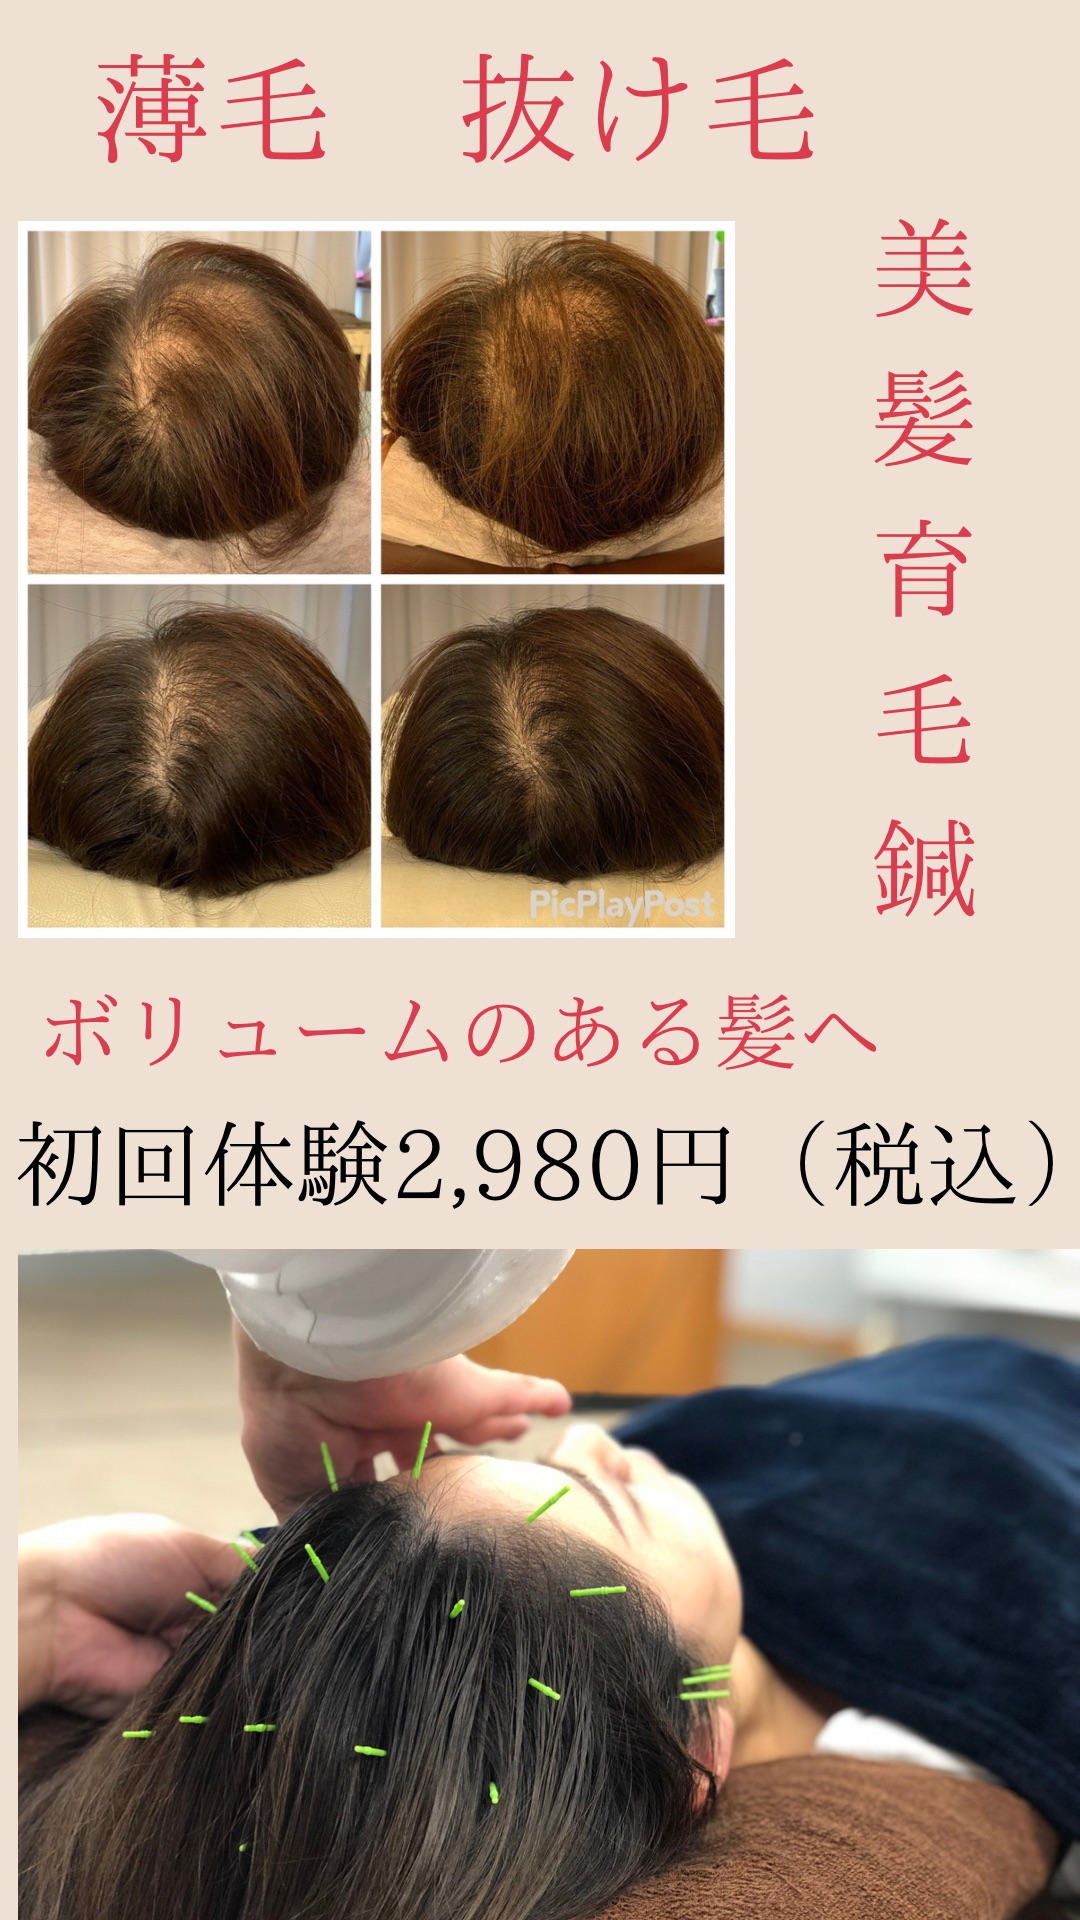 HaRick 美容鍼灸整体 女性の為の育毛美髪鍼（お試し価格）のメニュー画像